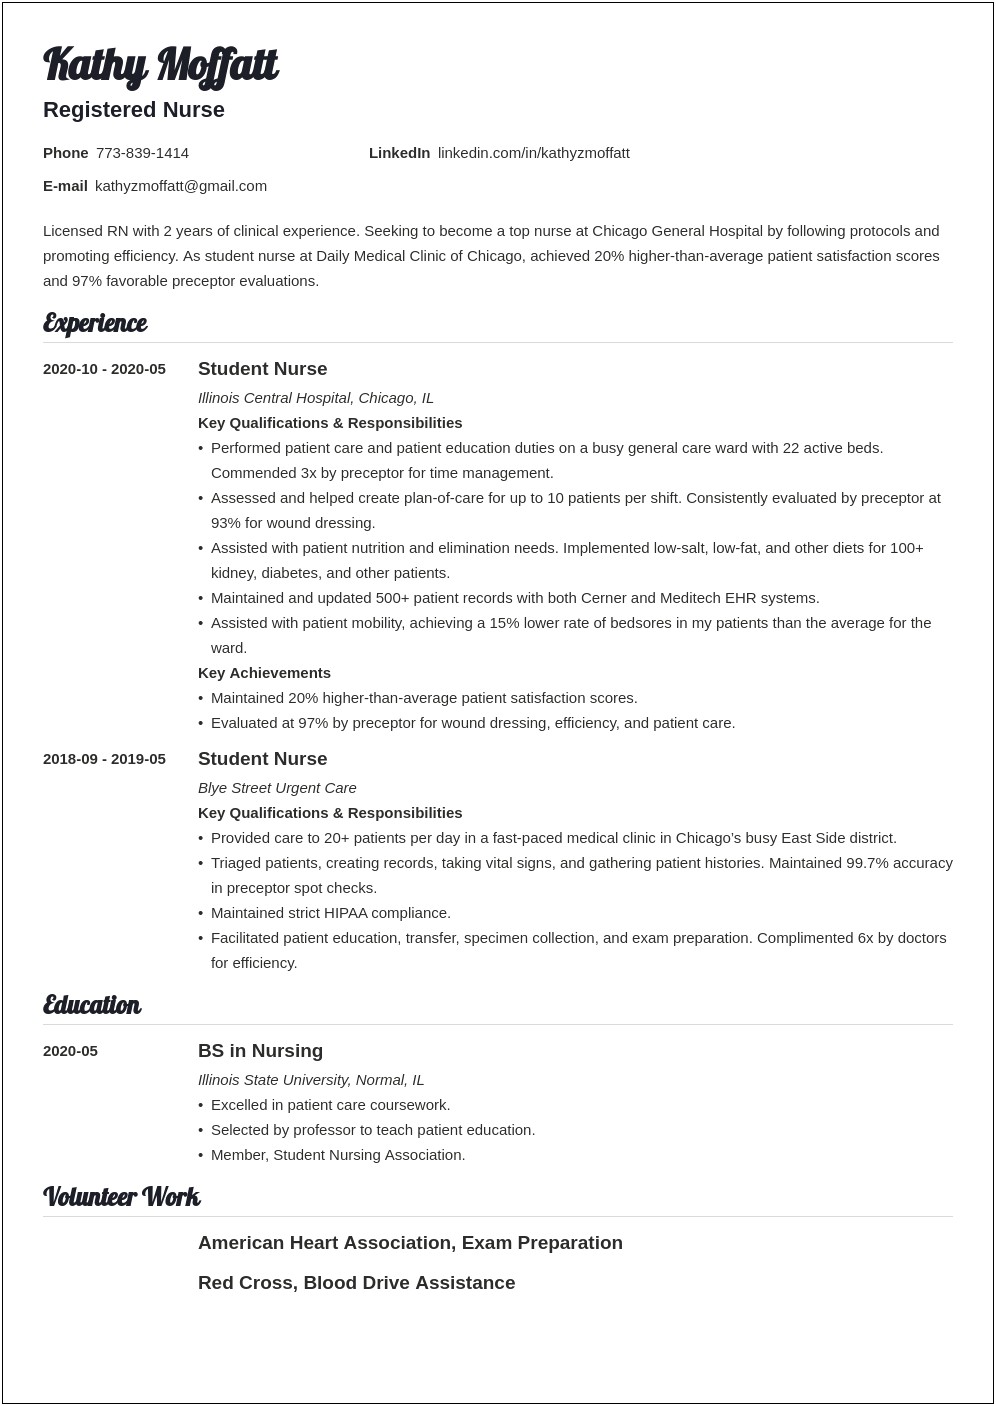 Resume Sample Professional Summary Registered Nurse